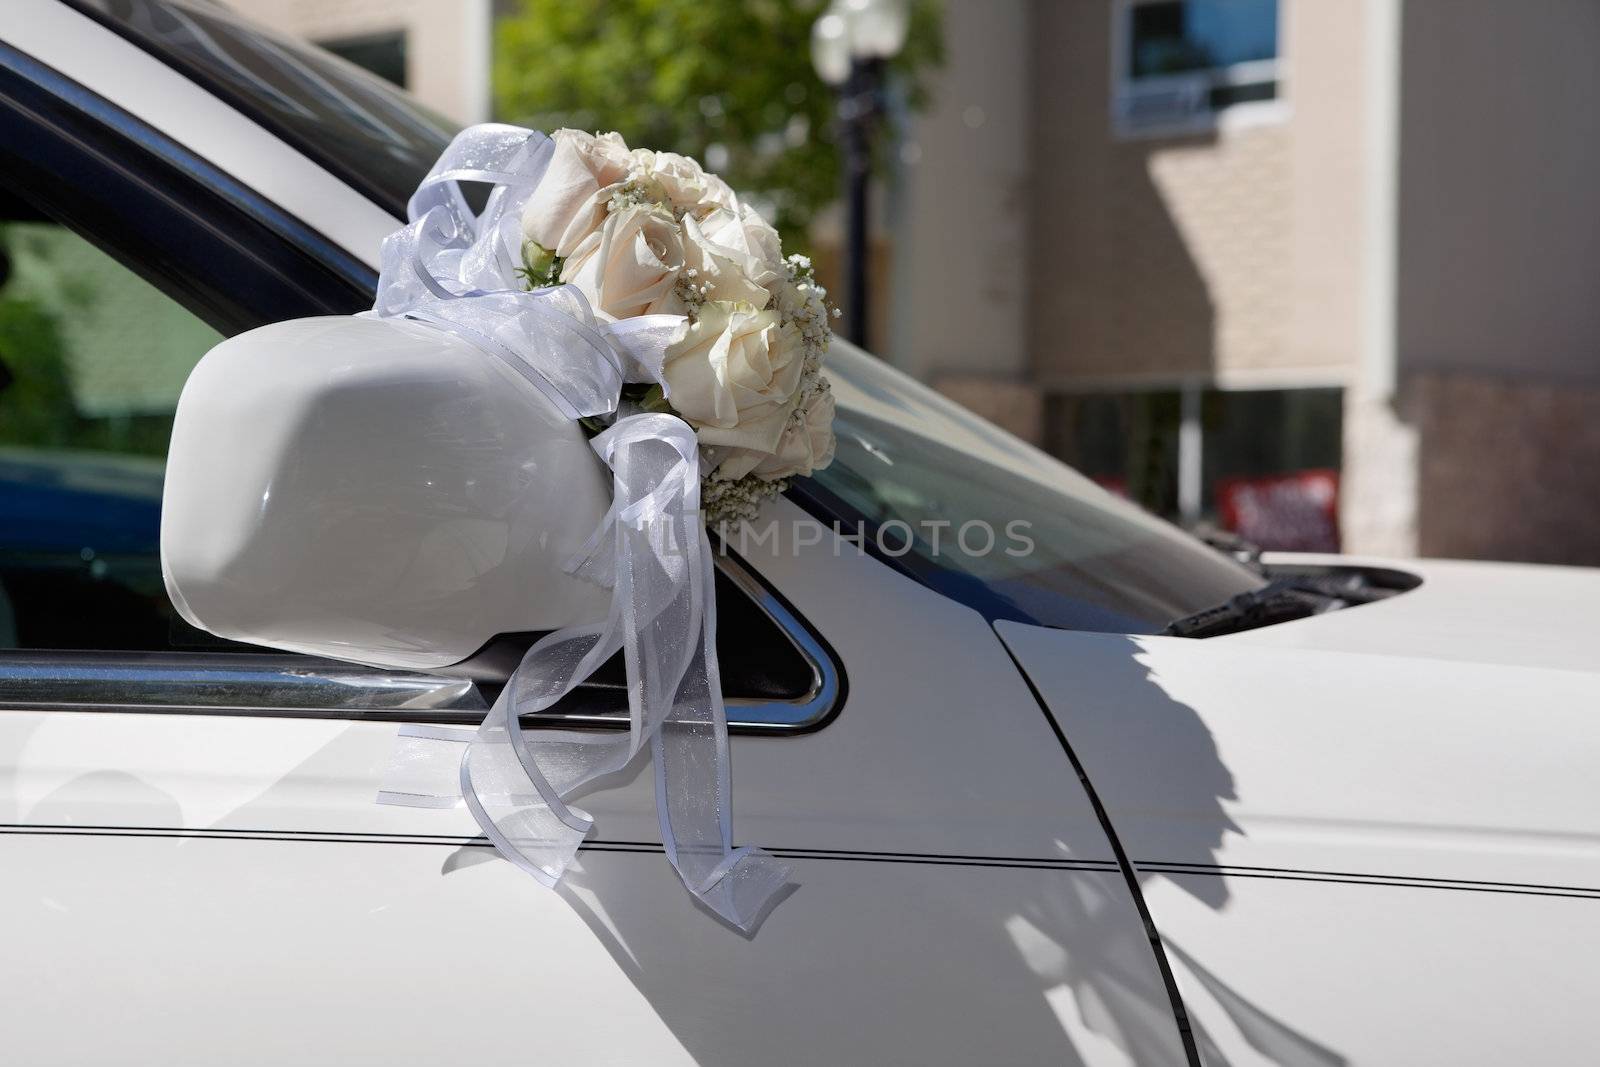 Flower bouquet on car bonnet